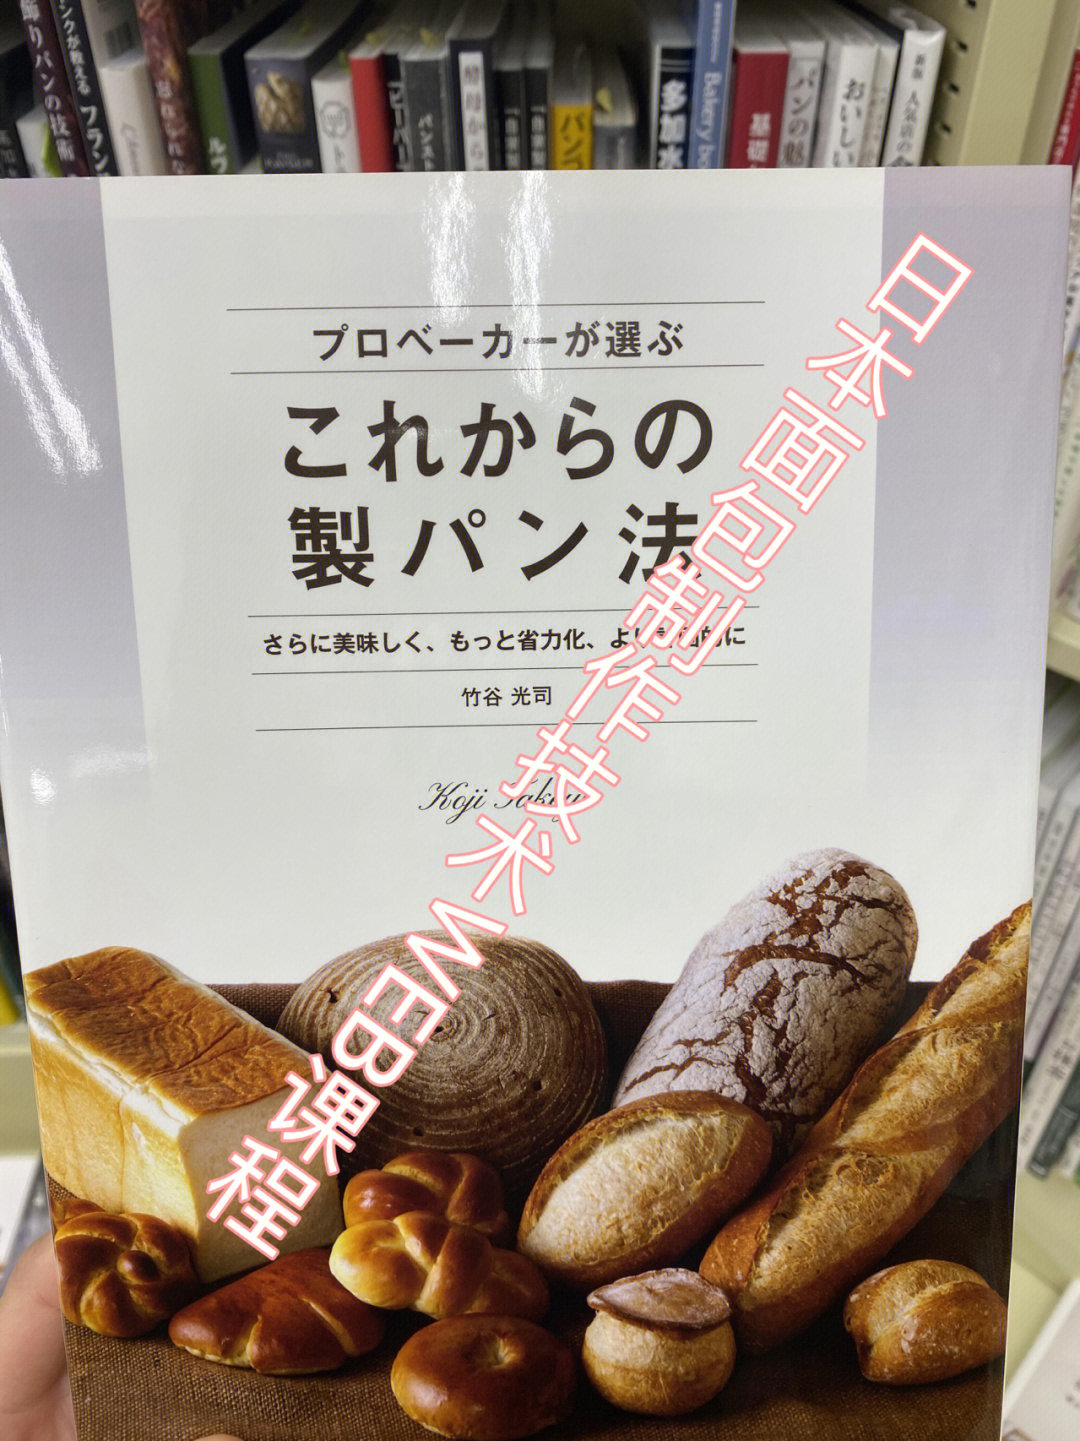 日本面包制作技术web课程Ⅰ报名Ⅰ上课Ⅰ